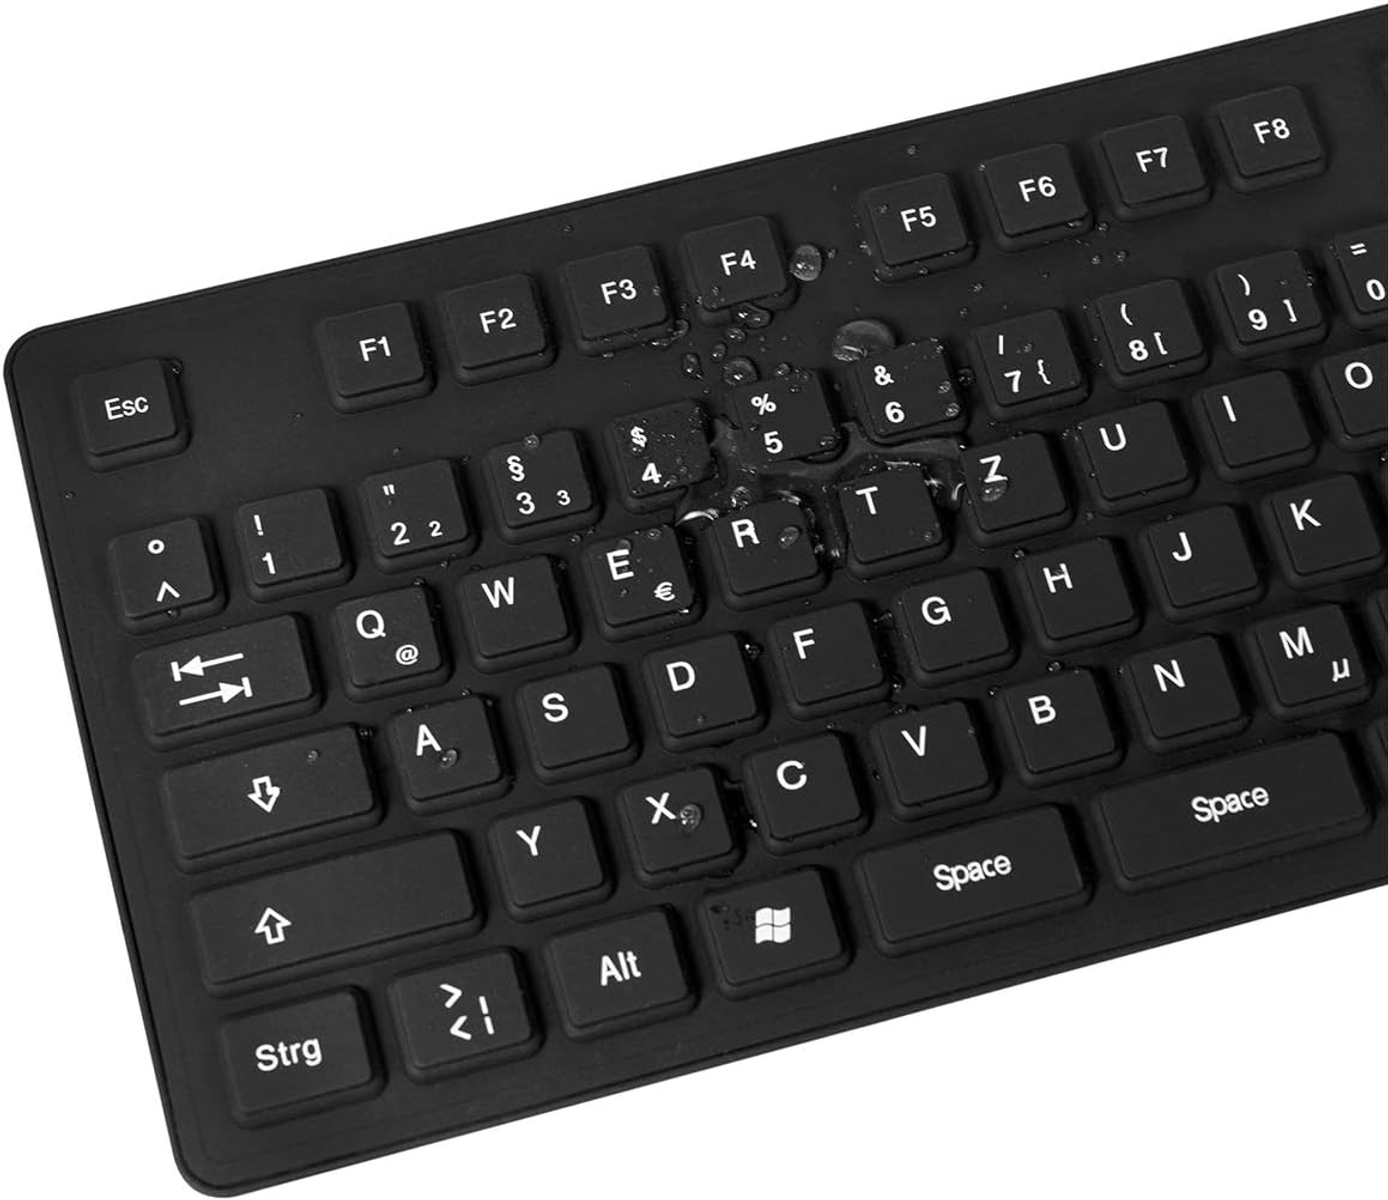 LOGILINK ID0019A, Tastatur